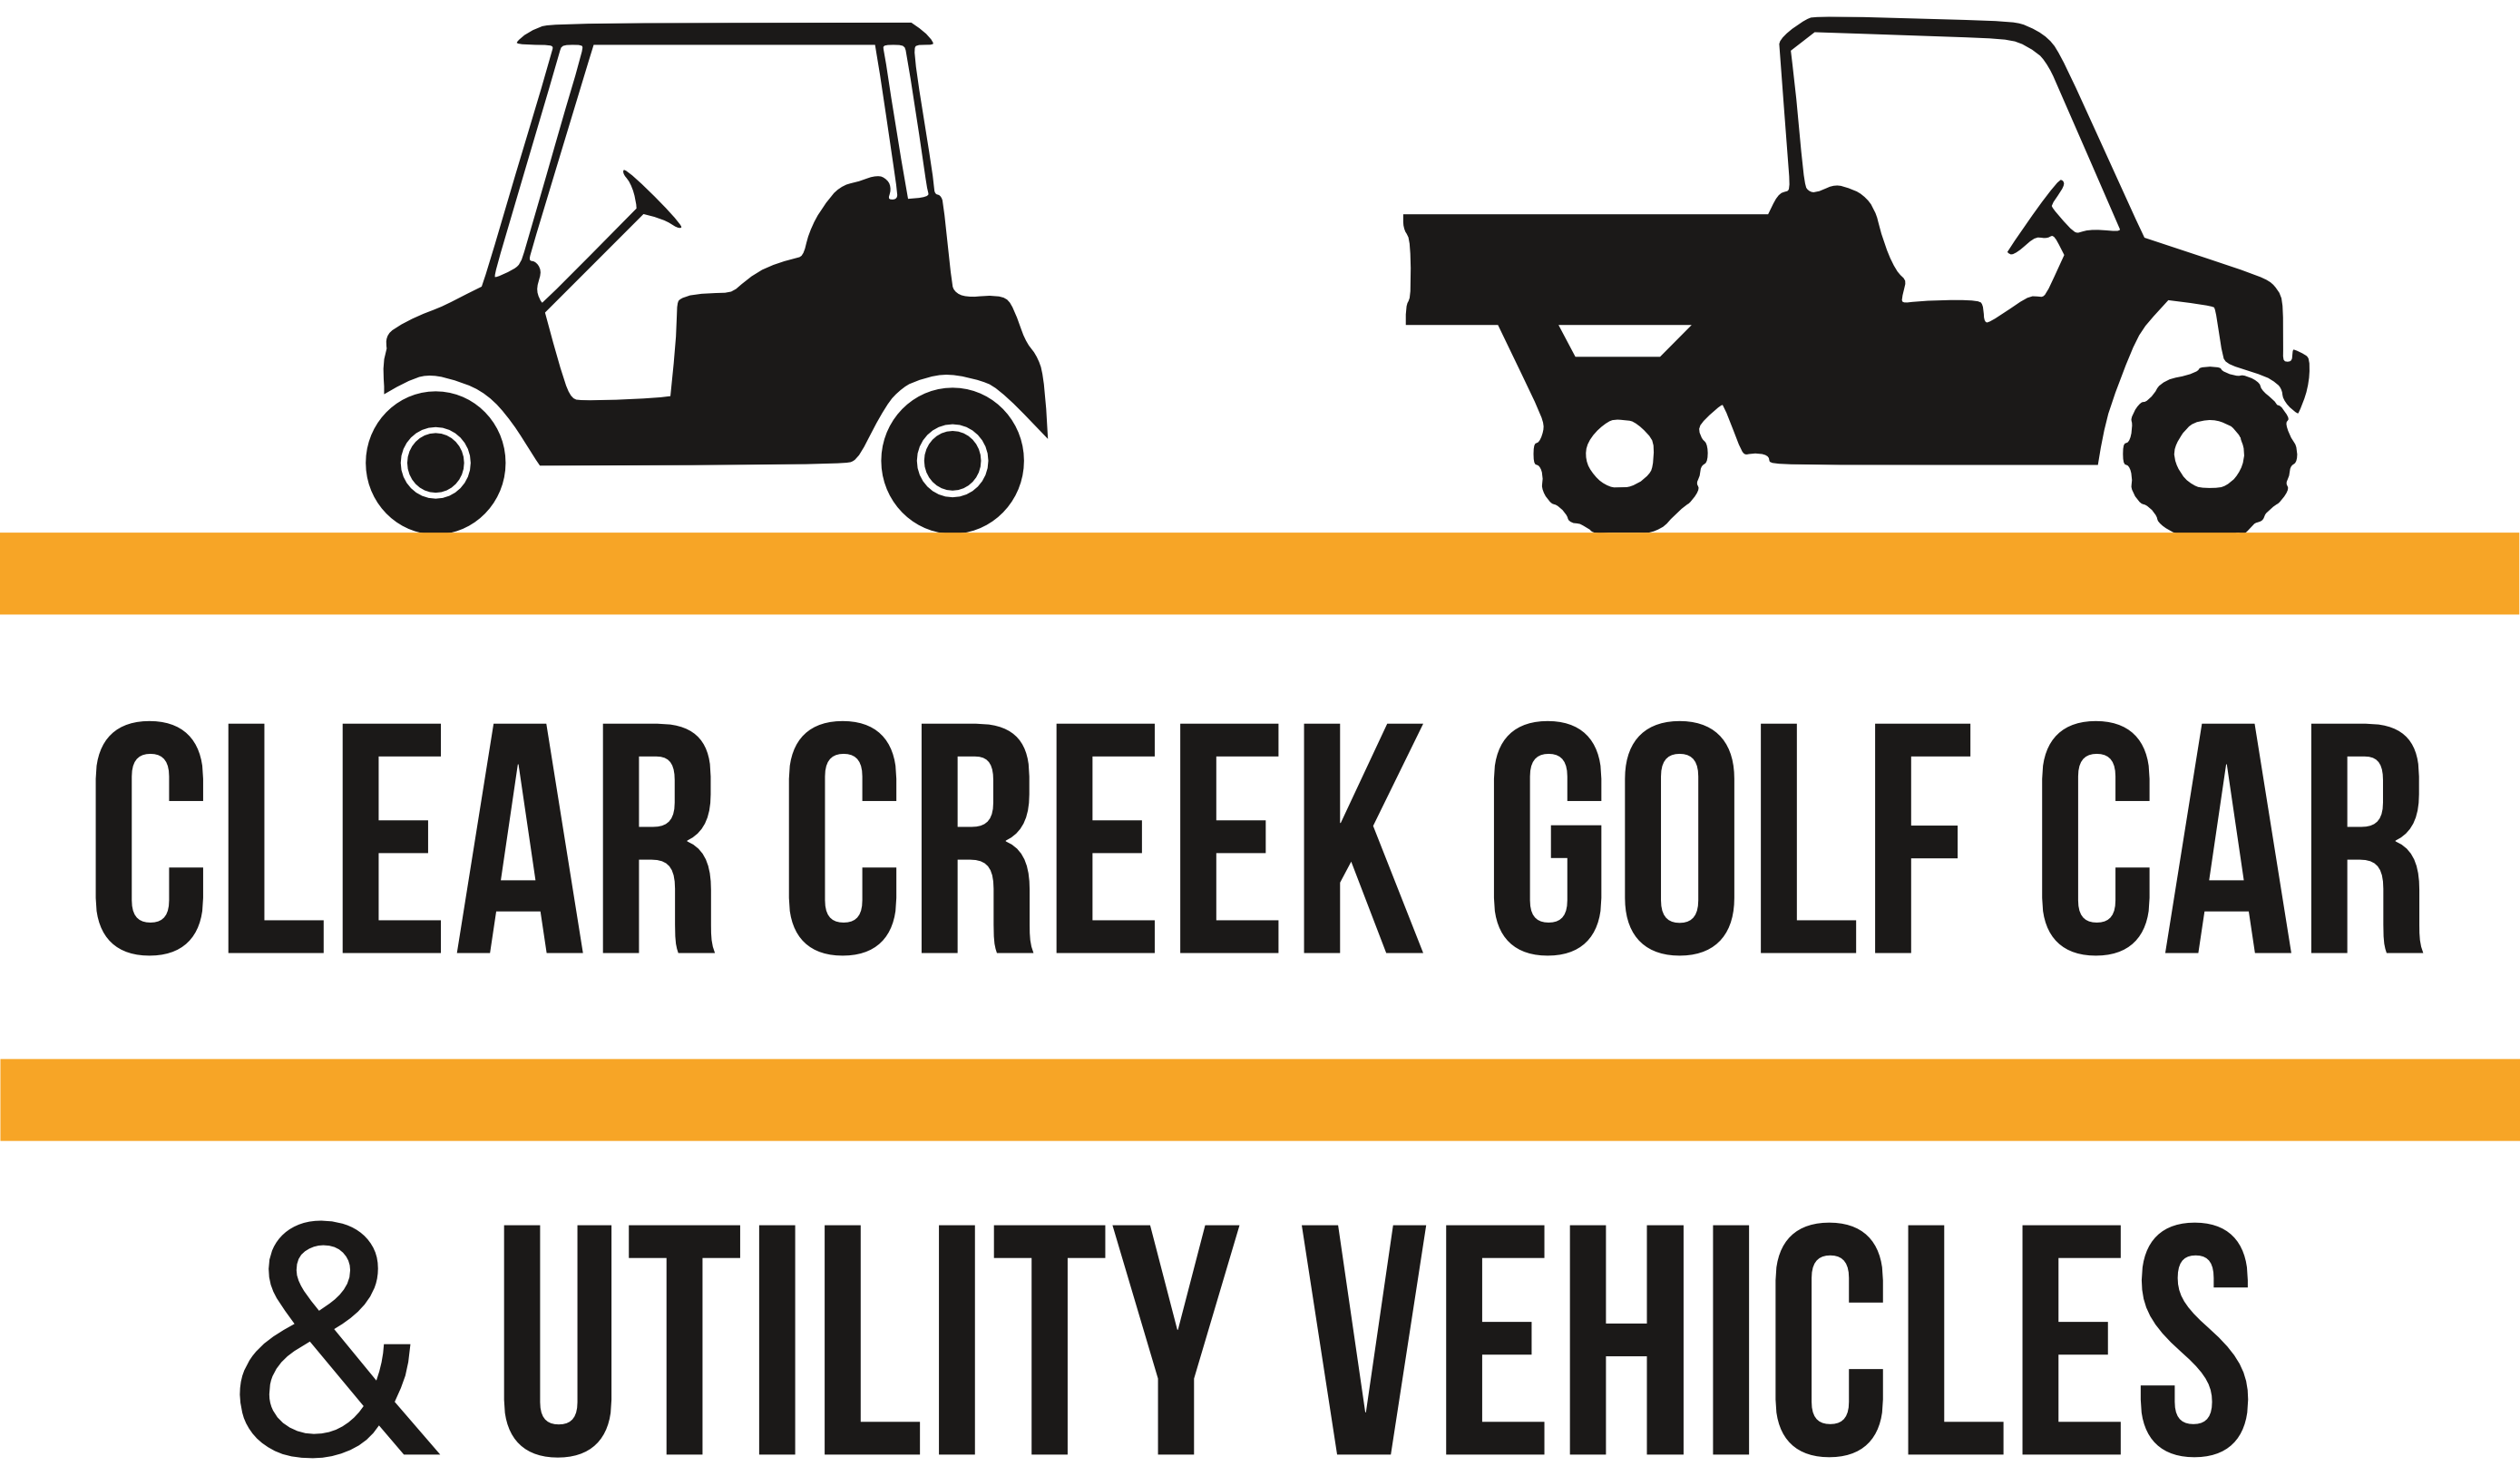 Clear Creek Golf Car & Equipment Co